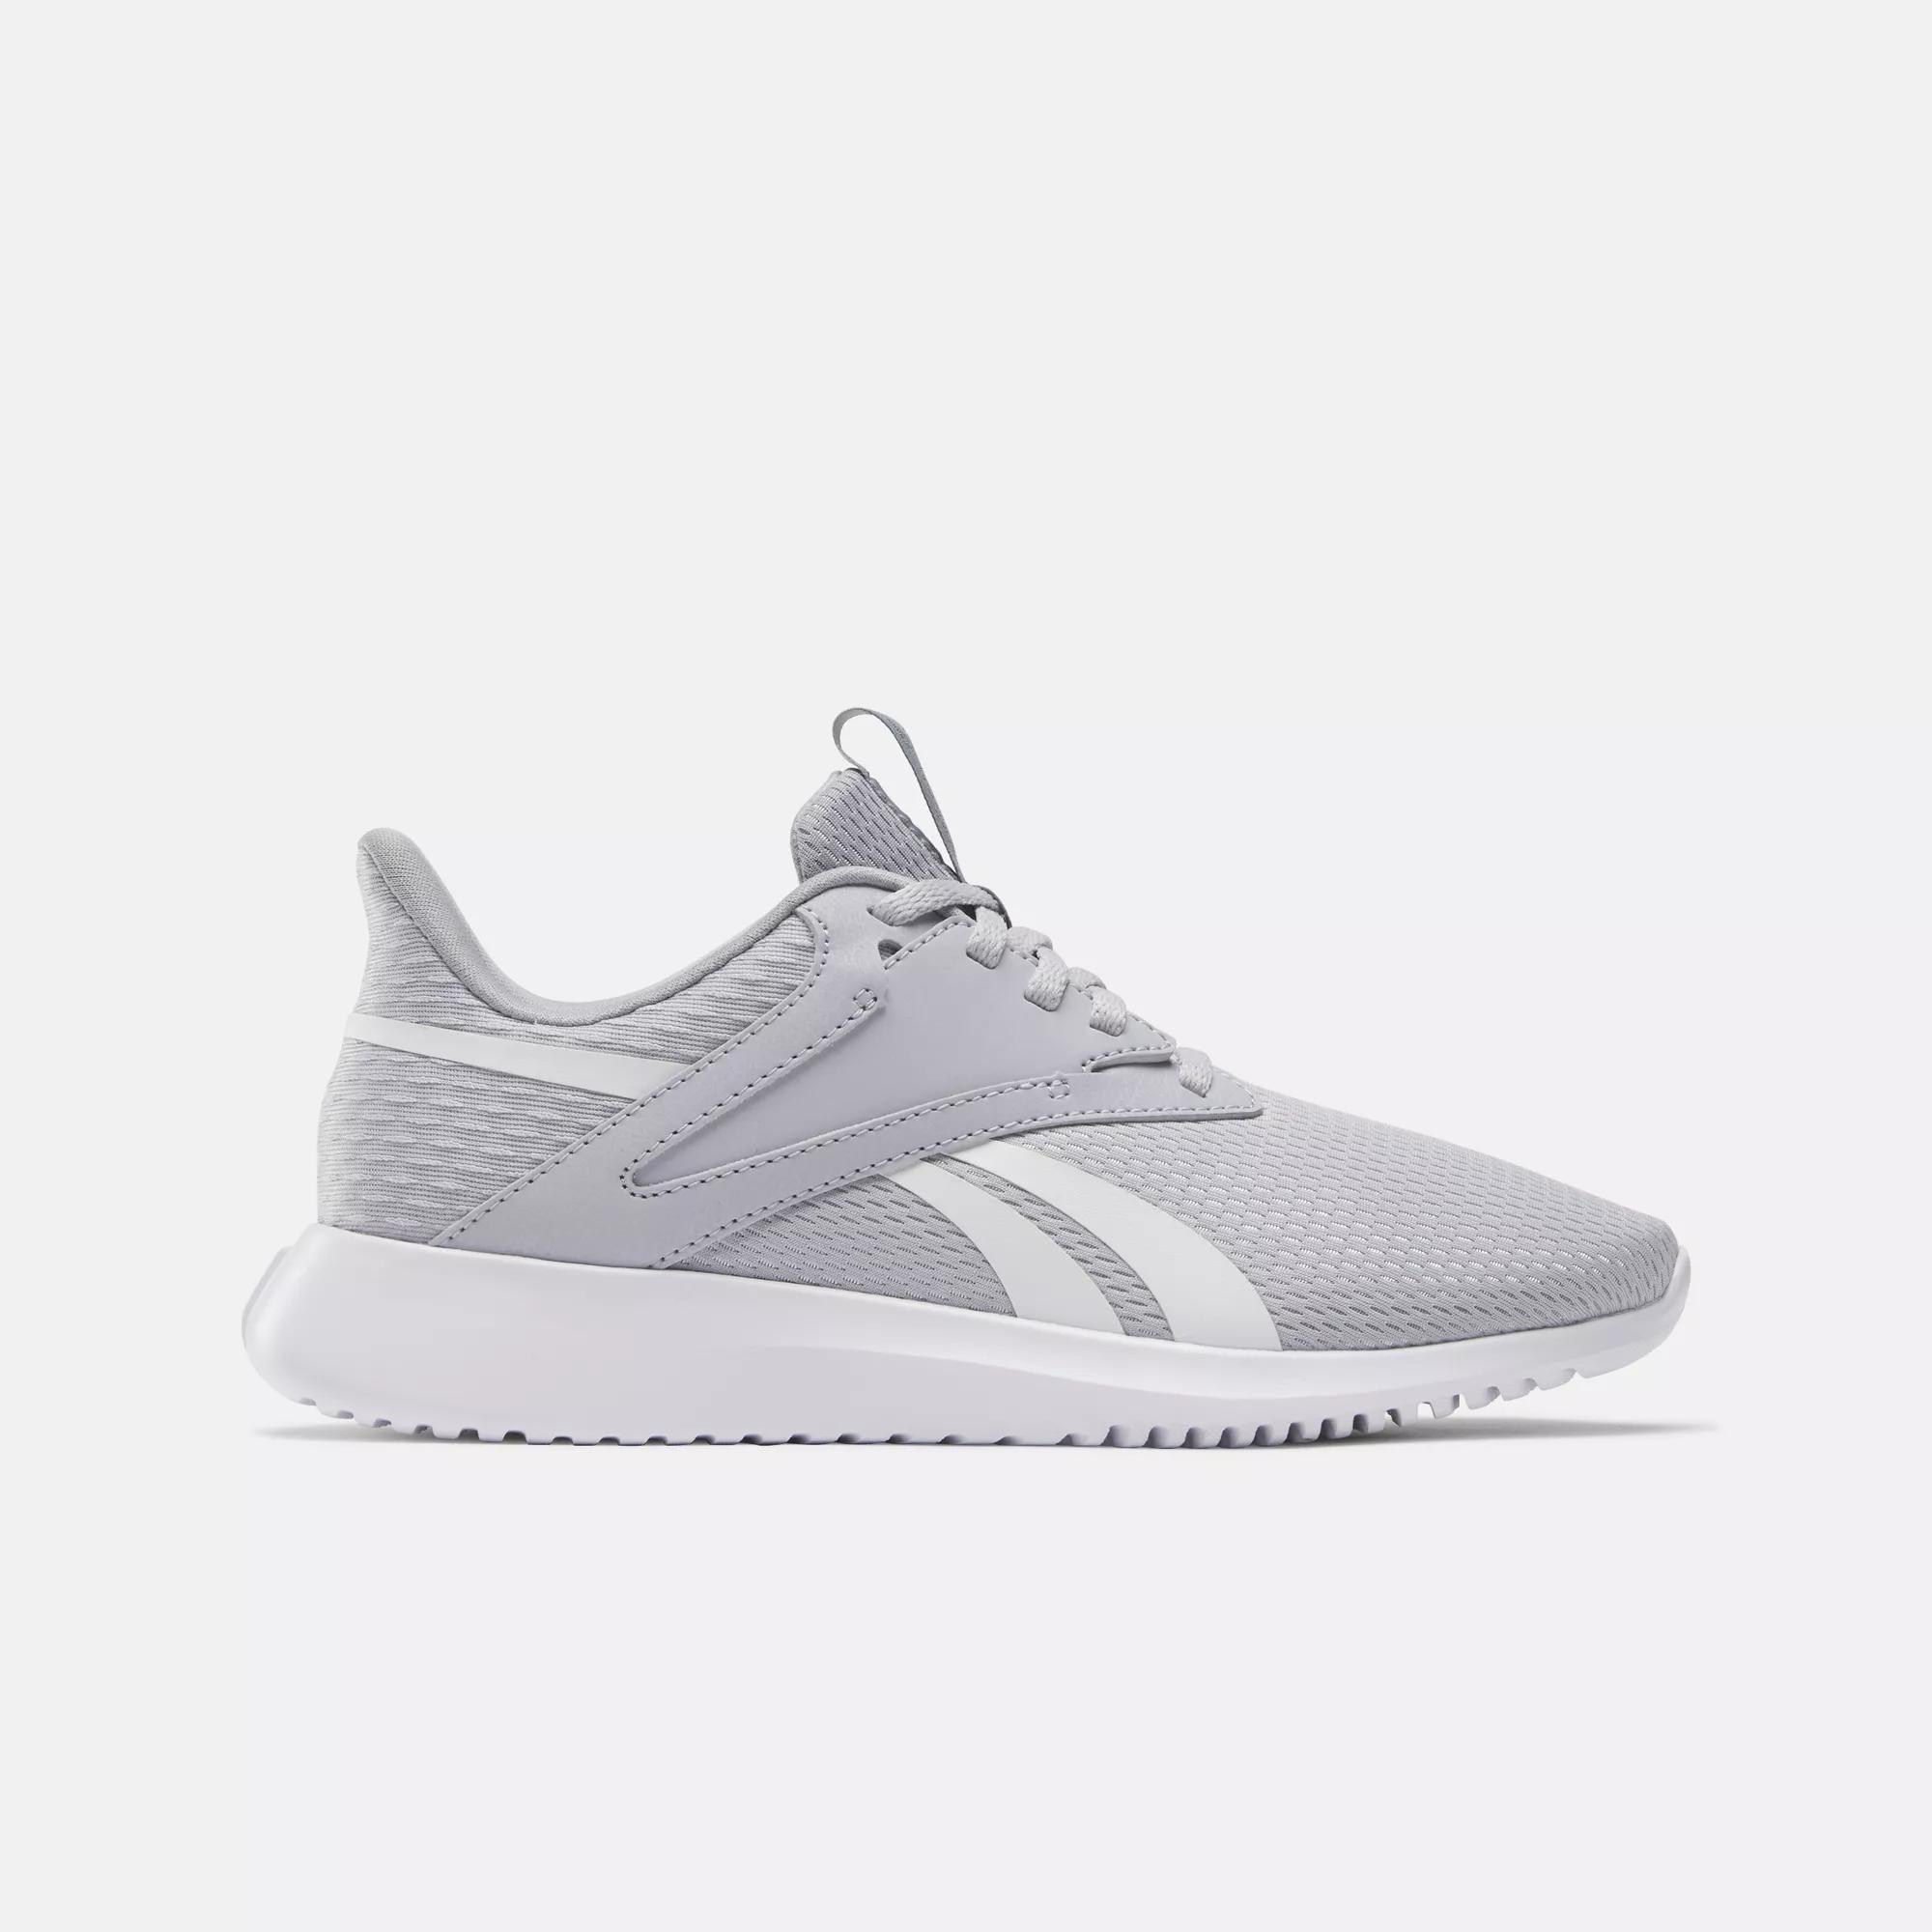 Reebok Women's Fluxlite Training Shoes in Grey - Size 7.5